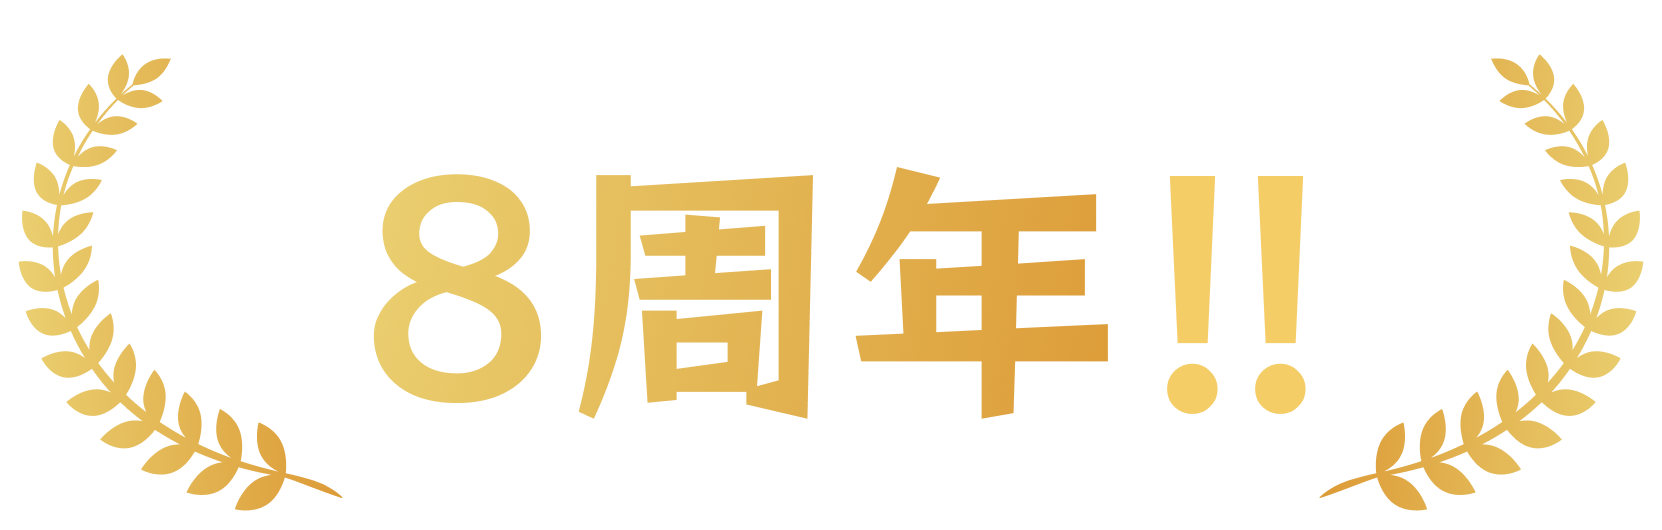 お陰様でAndroidリリース8周年!!